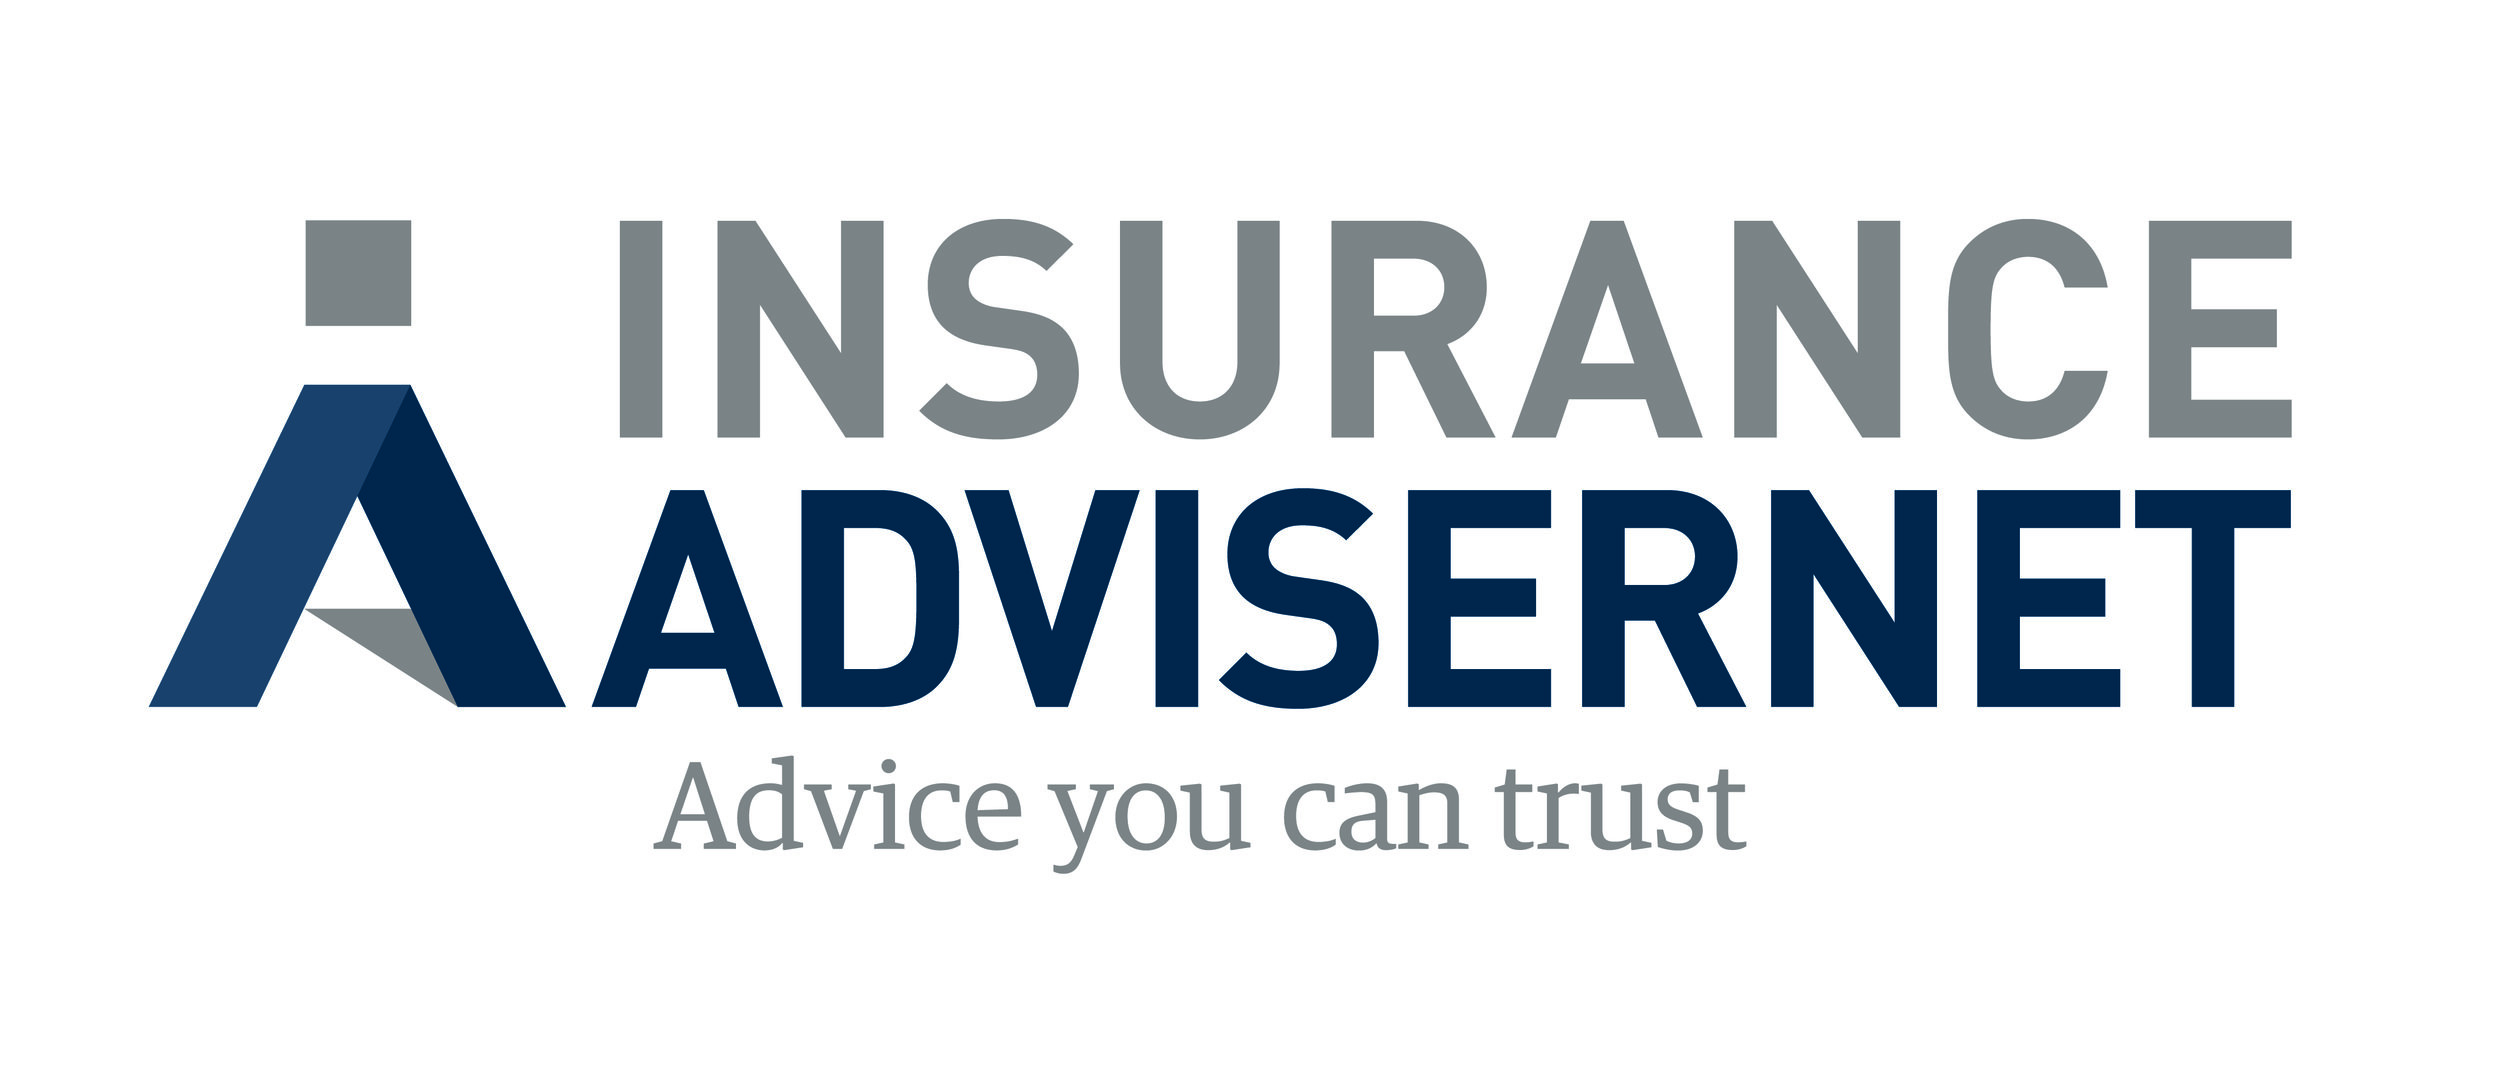 Insurance Advisernet.jpg